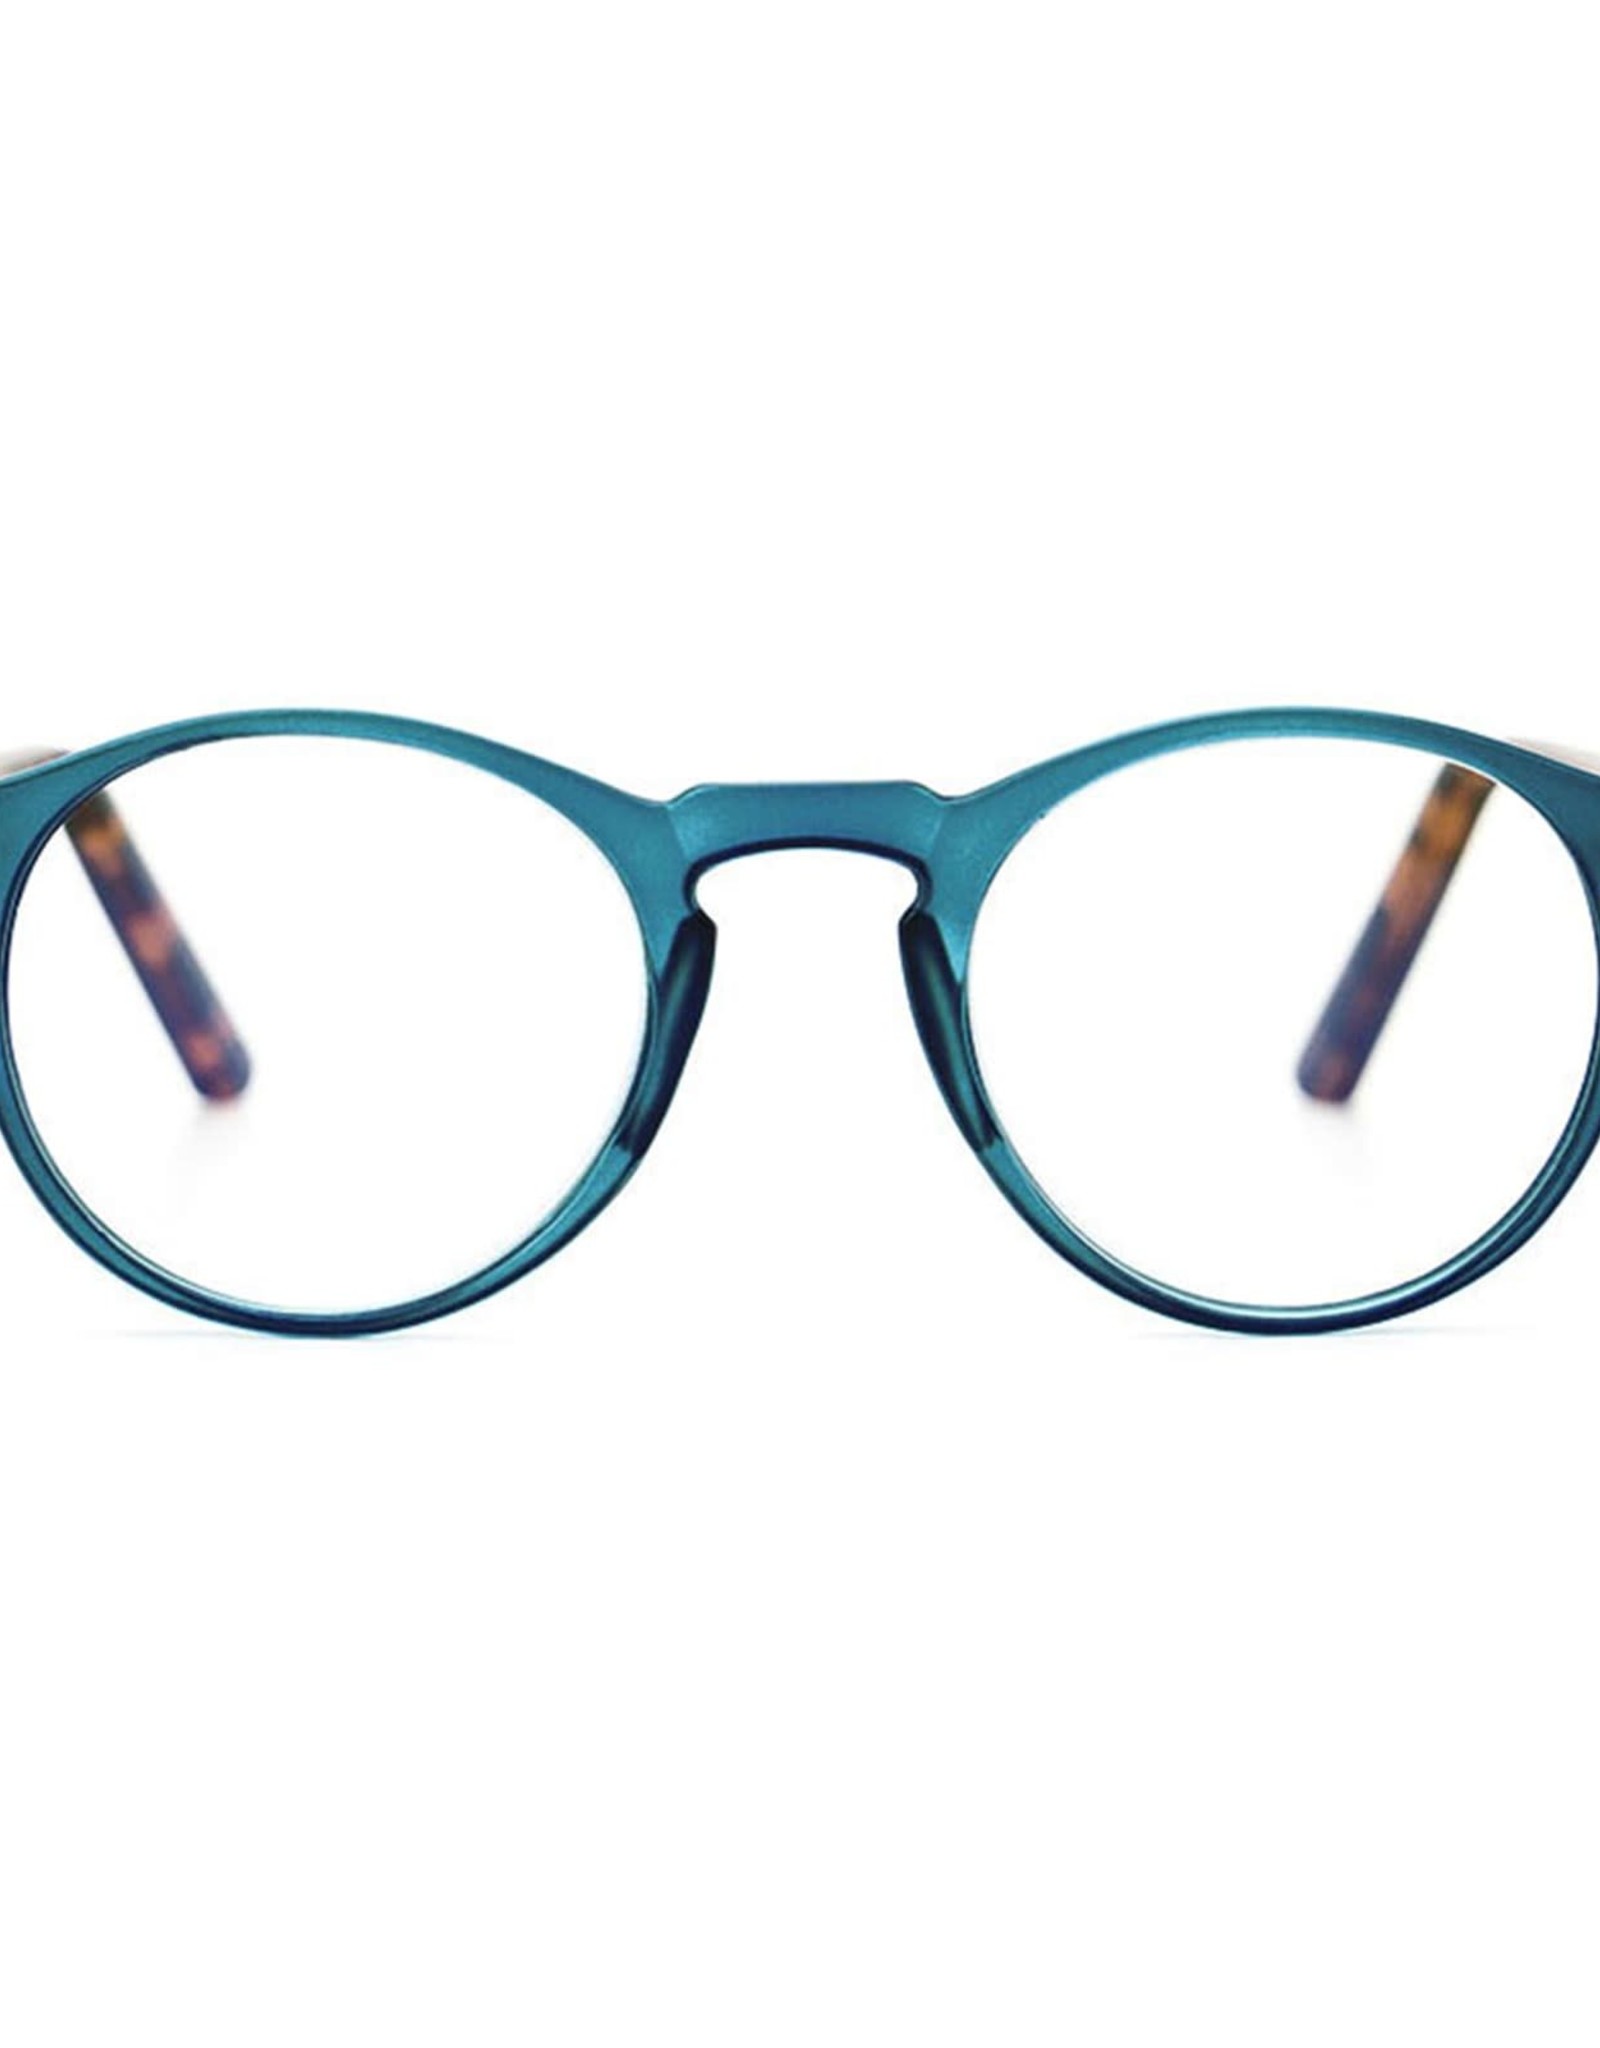 - Sanford Reader Glasses